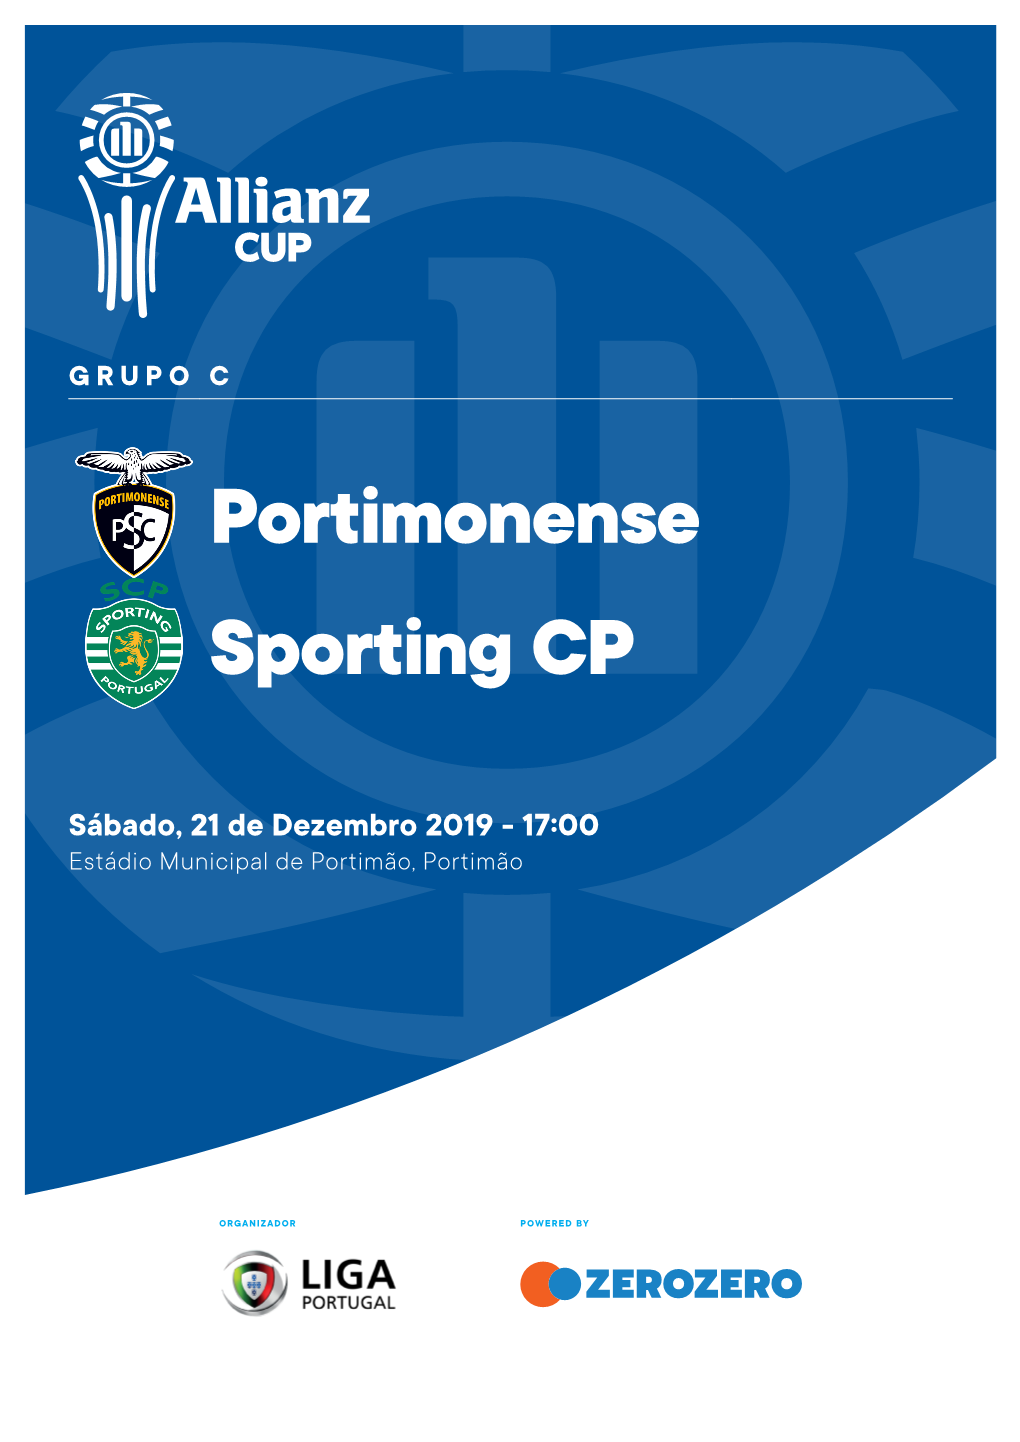 Portimonense Sporting CP